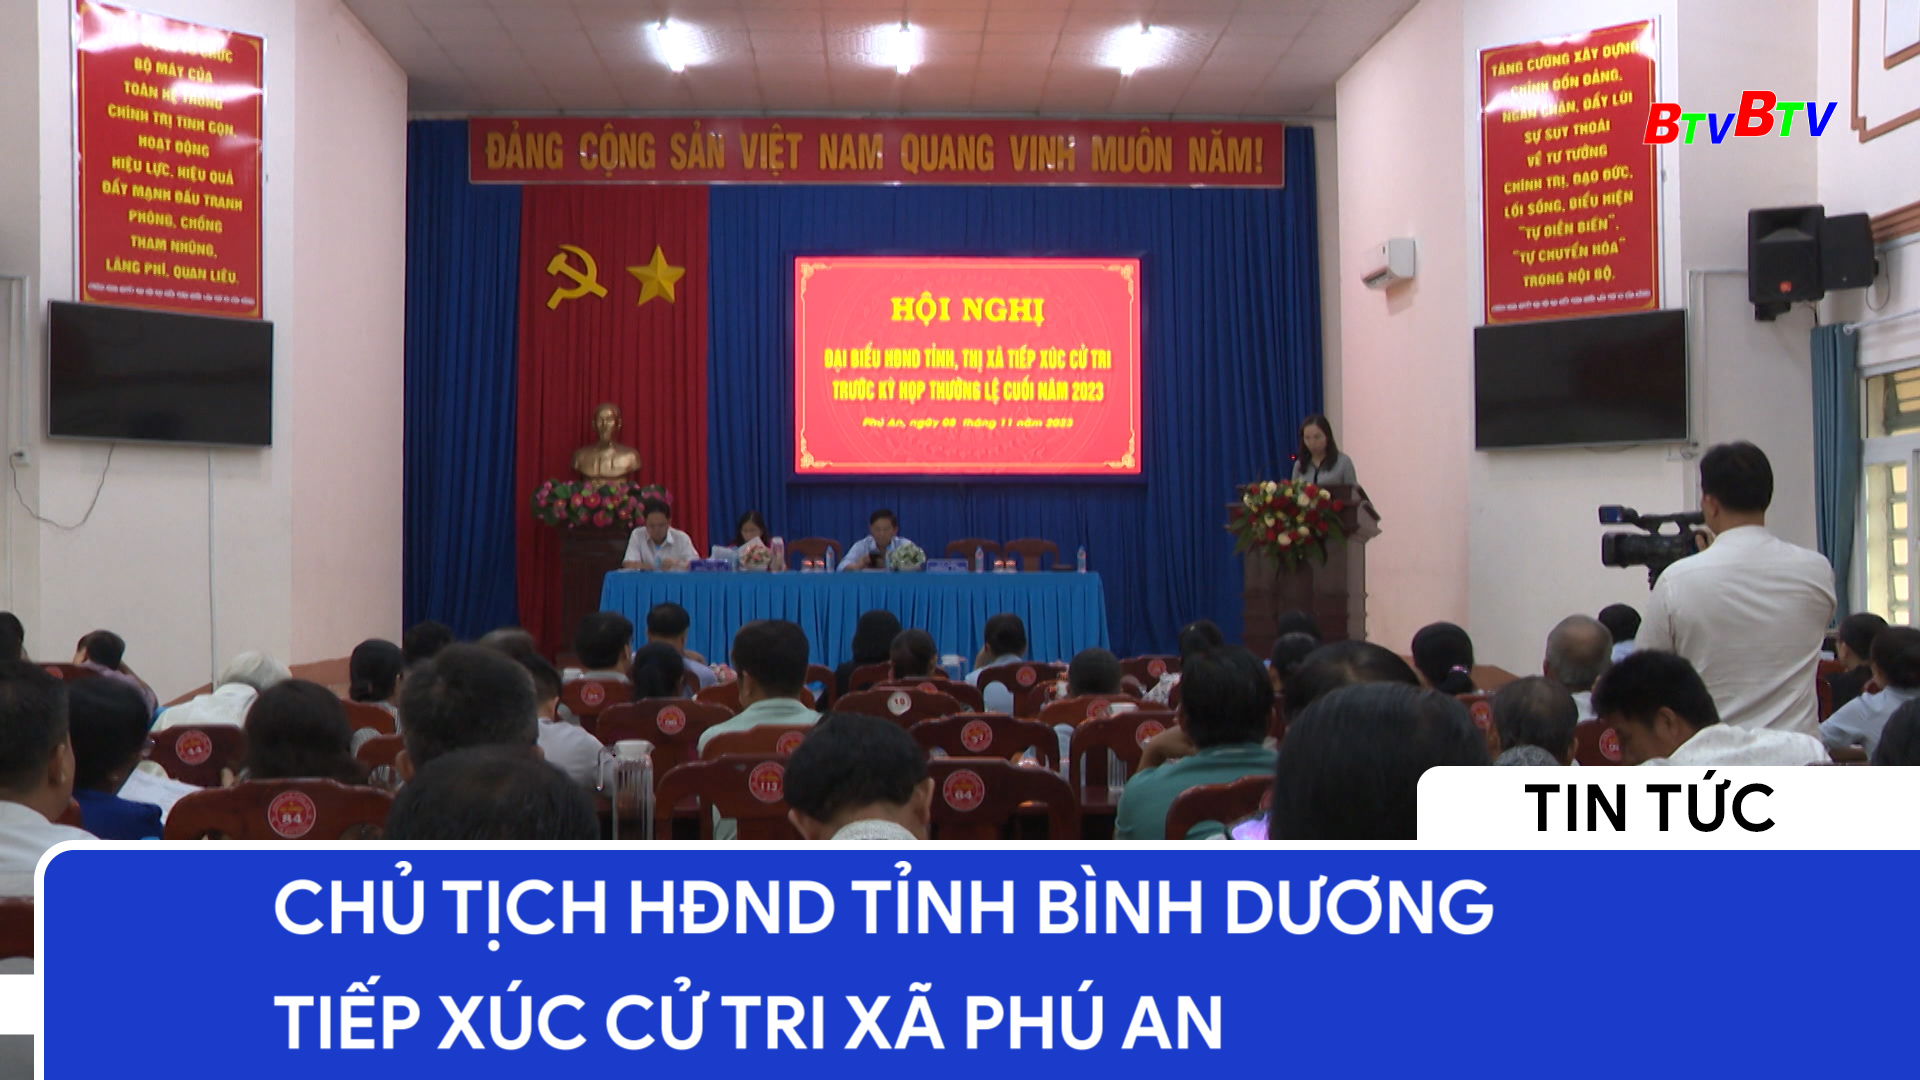 Chủ tịch HĐND tỉnh Bình Dương tiếp xúc cử tri xã Phú An